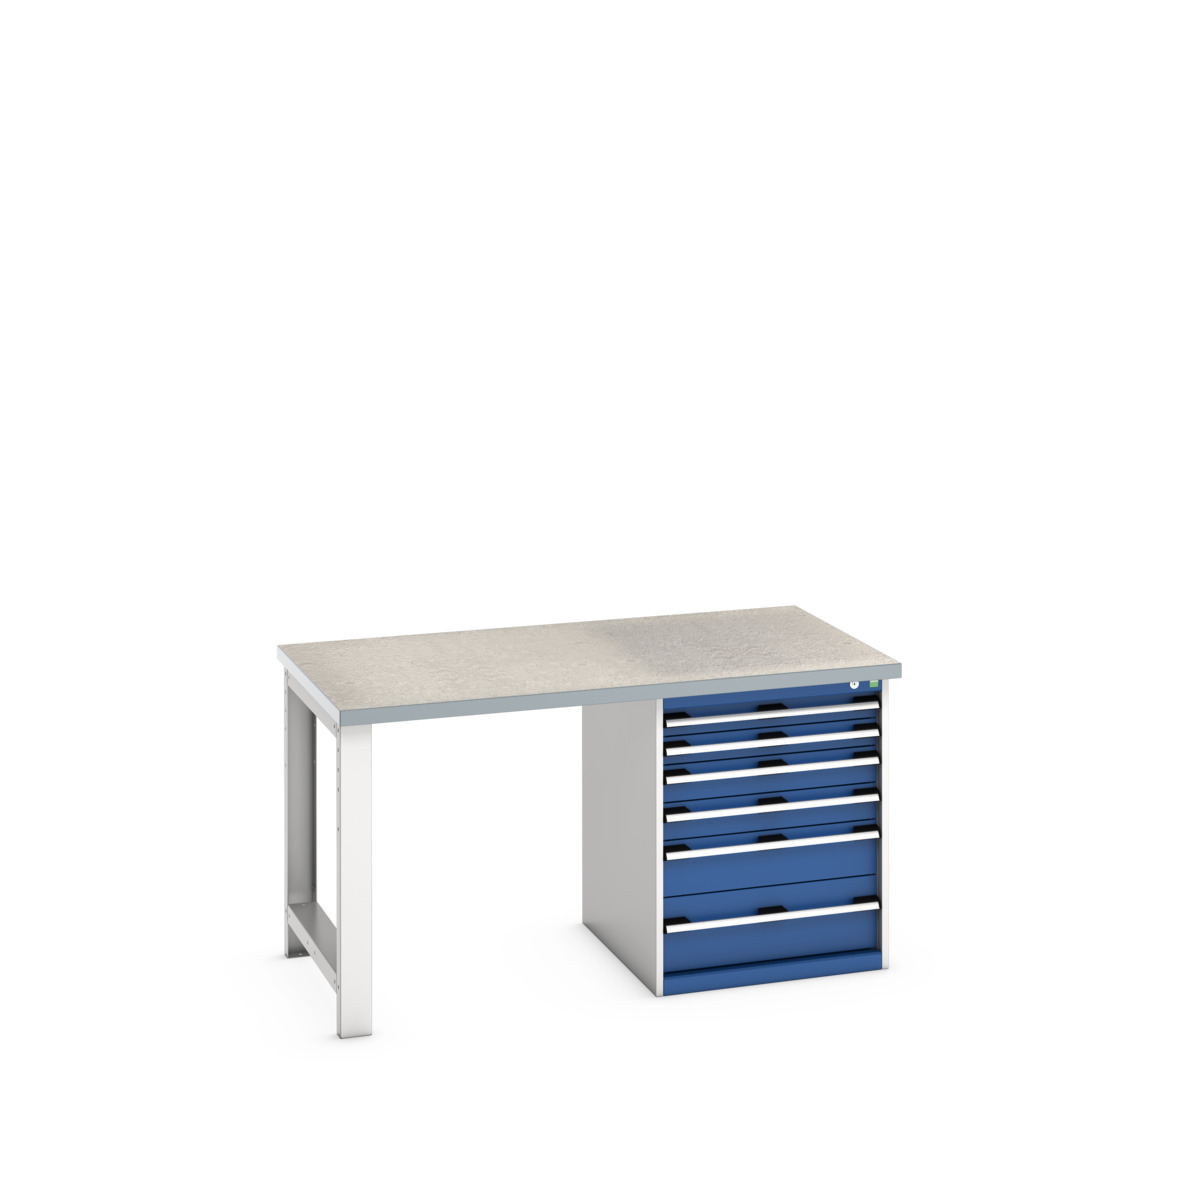 41004114.11V - cubio pedestal bench (lino)